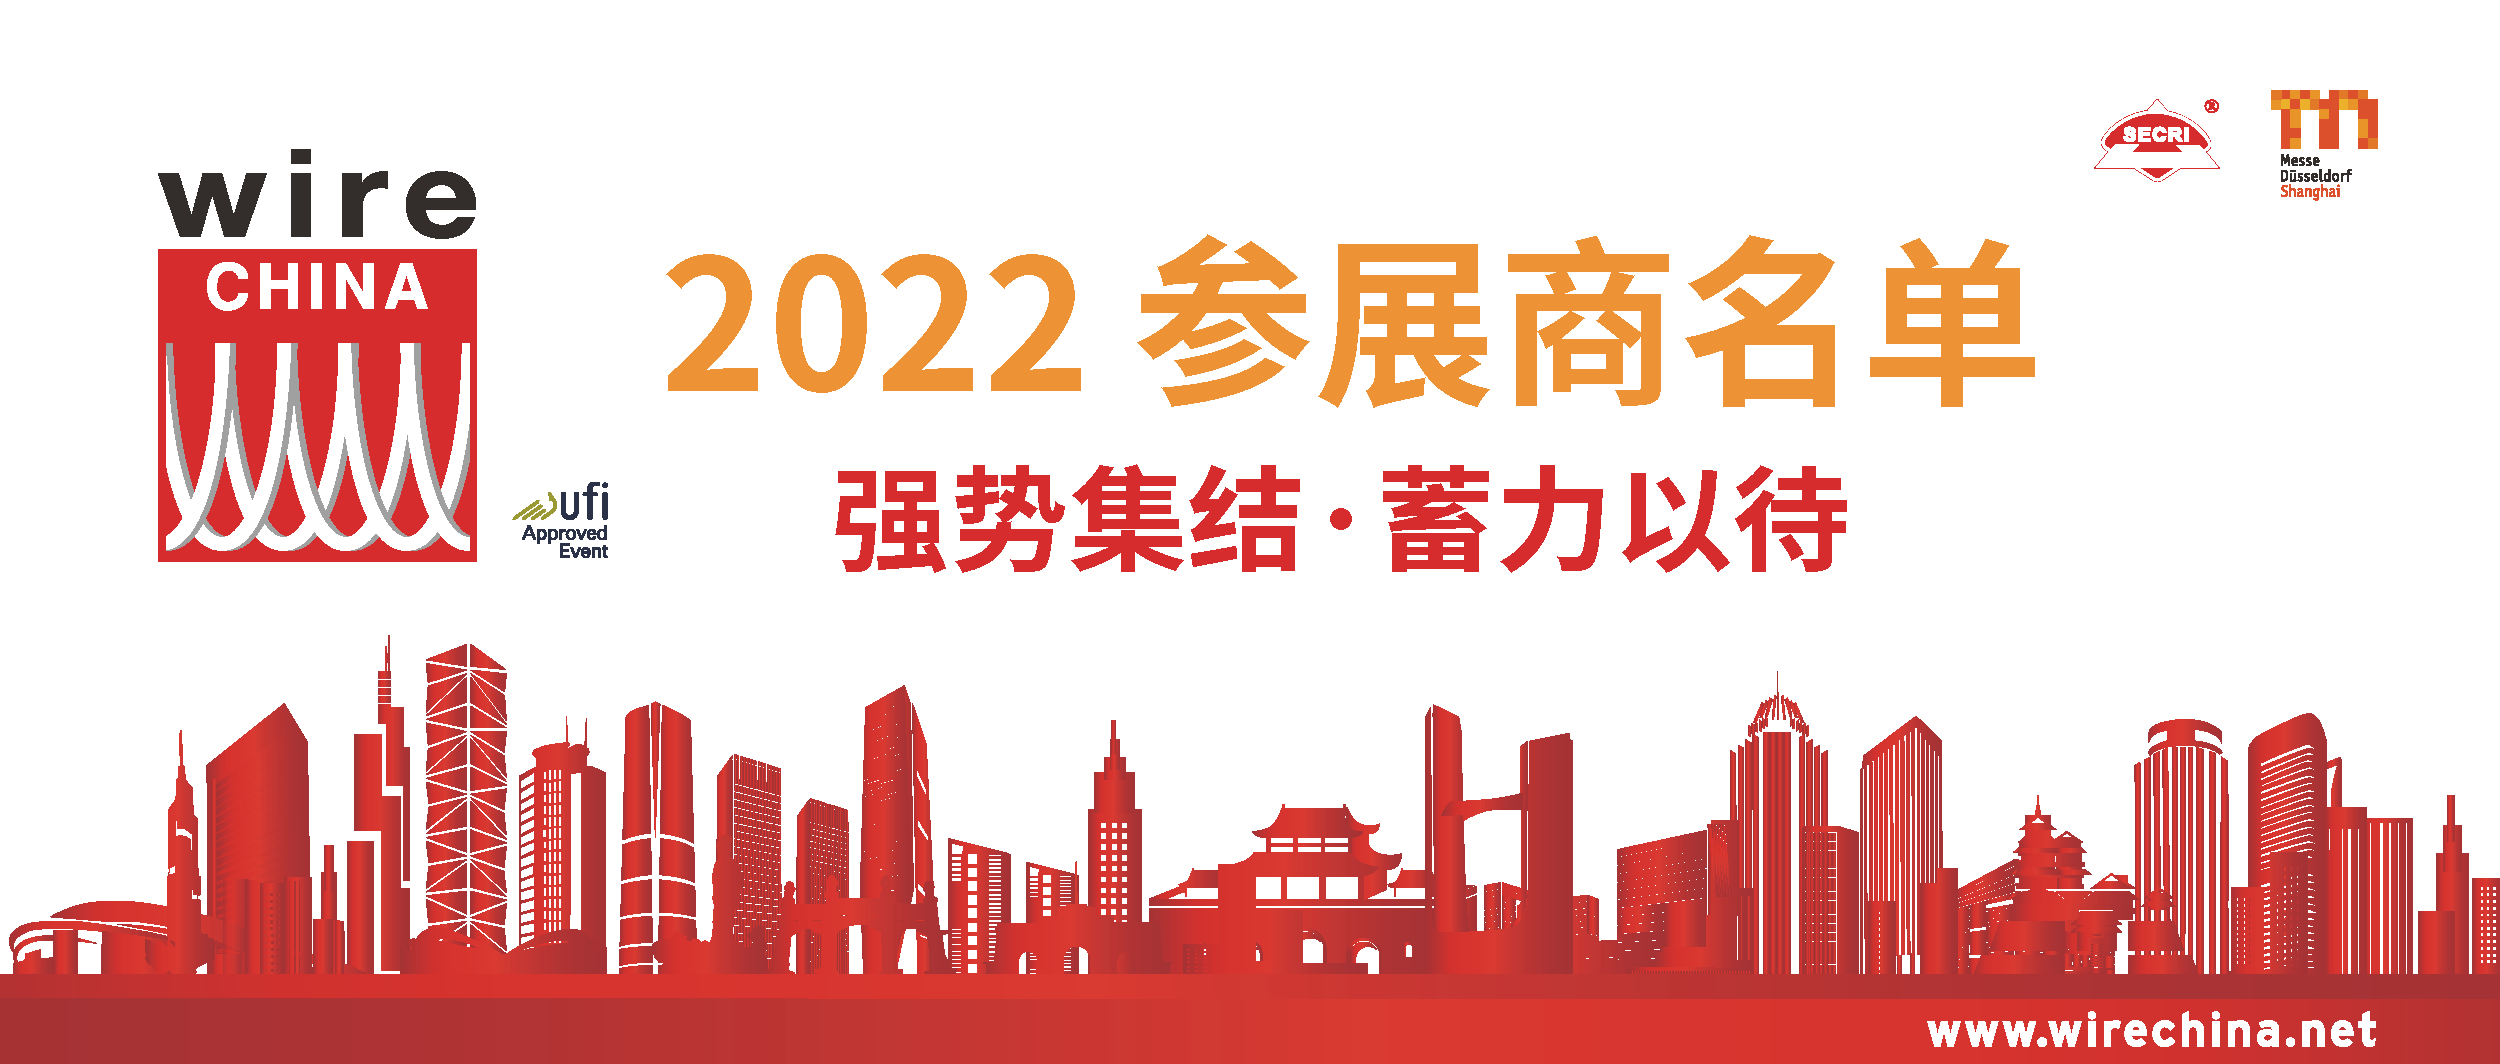 蓄力以待 wire China 2022 | 线缆行业企业年度线下超强集结